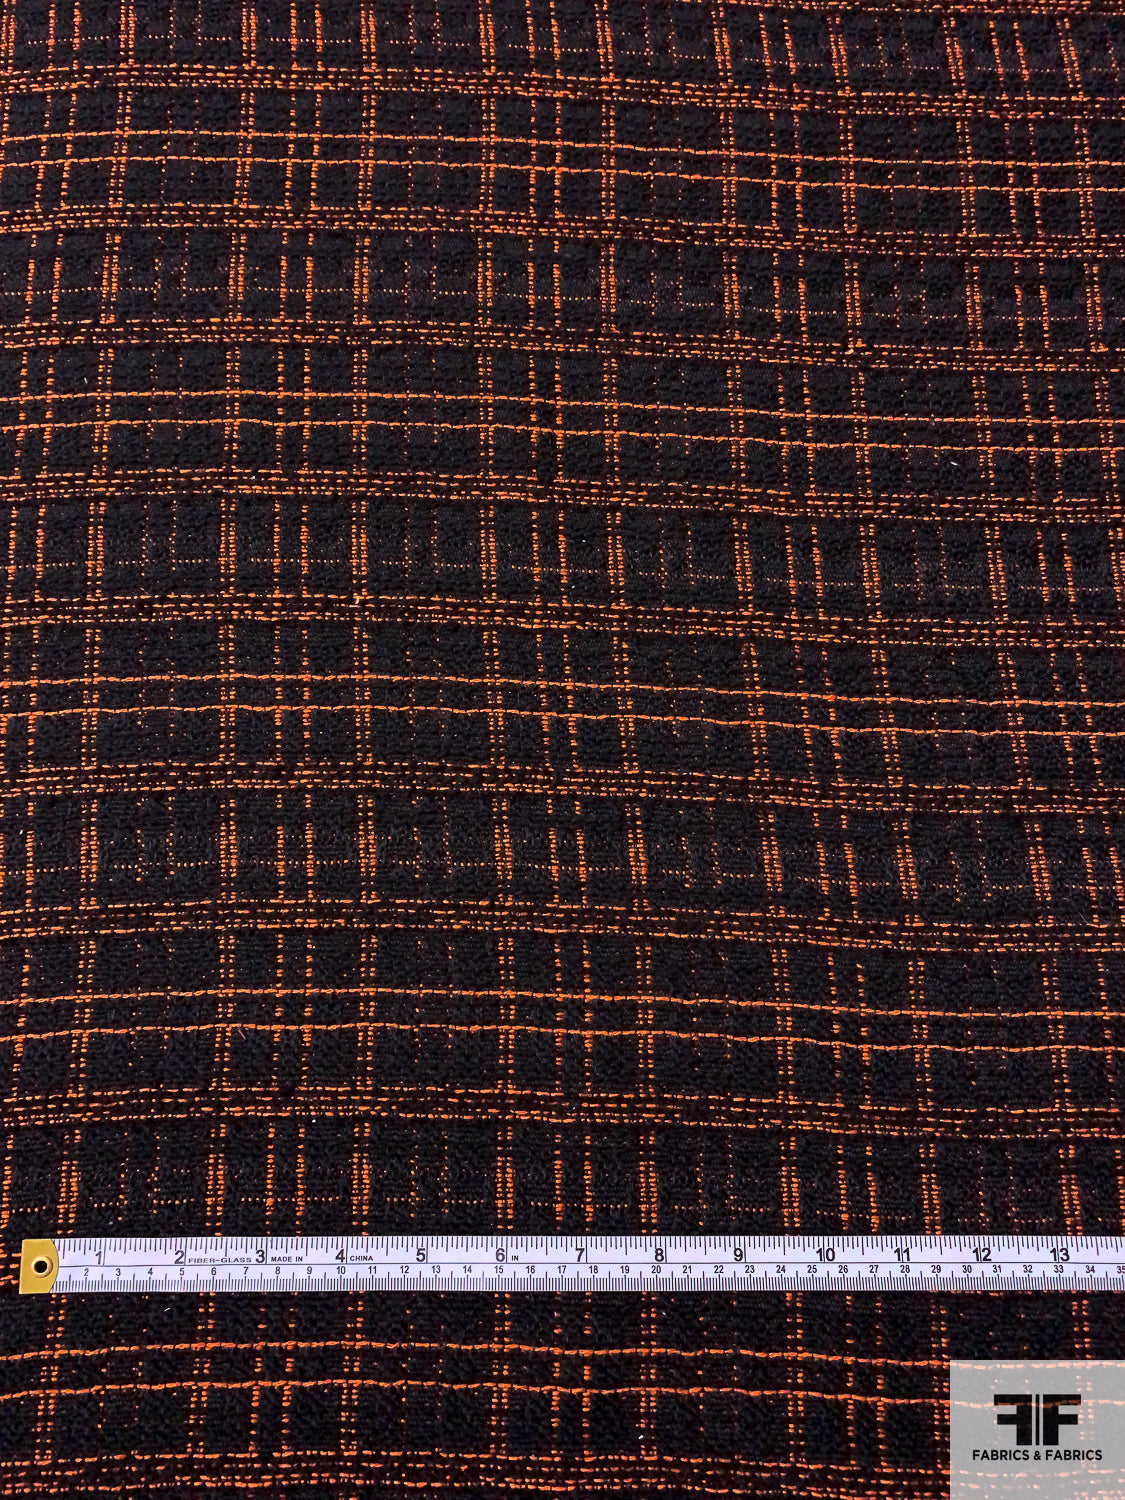 Plaid Wool Blend Jacket Weight Tweed - Orange / Black